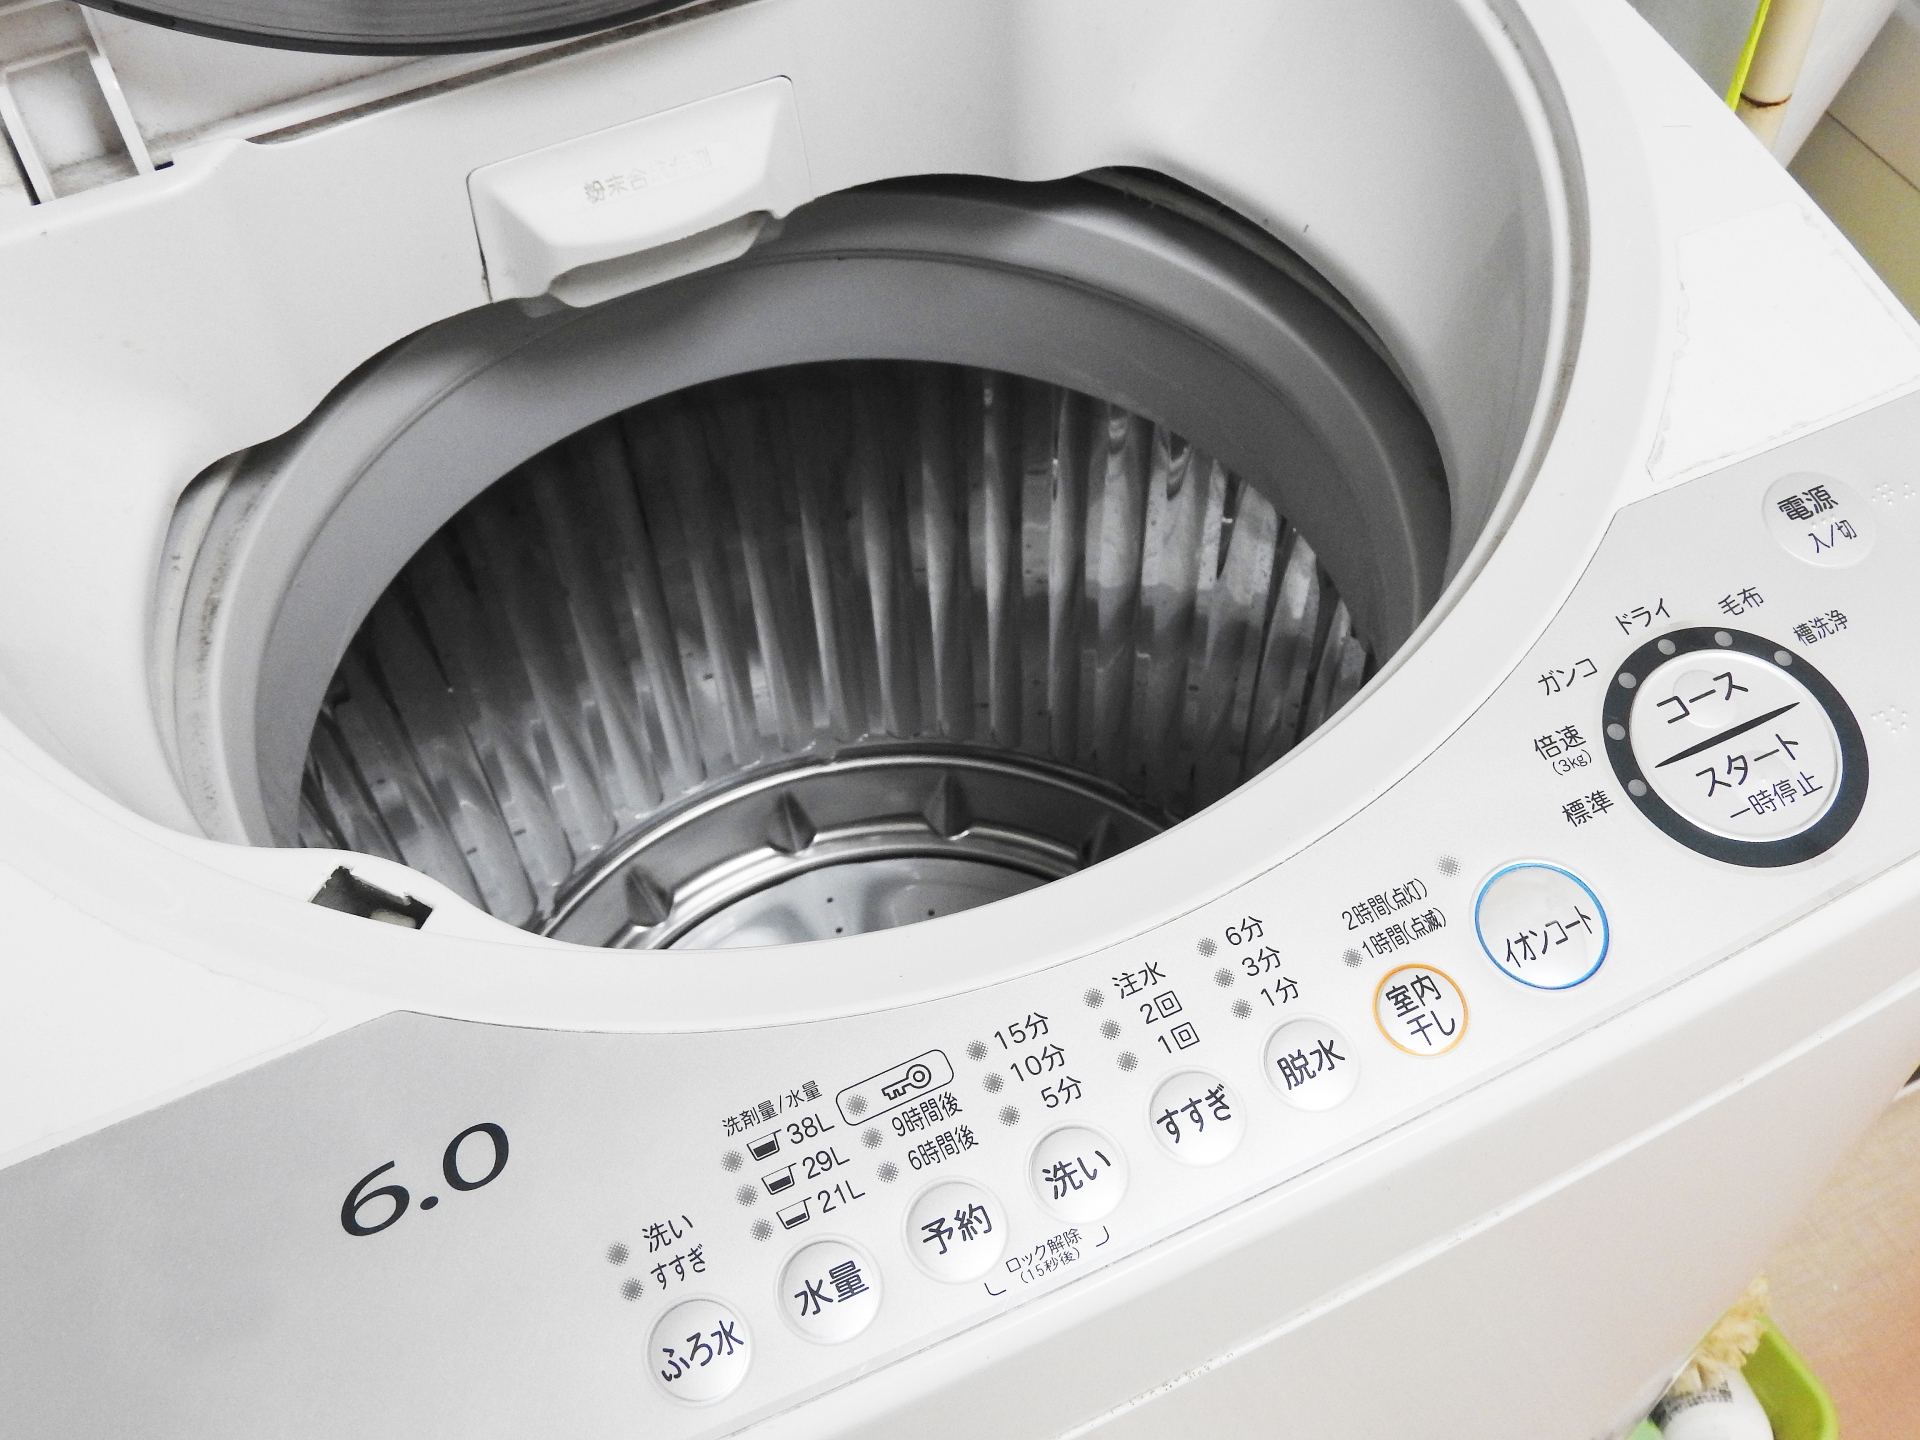 洗濯の正しいやり方について。汚れ・色・素材・大きさで仕分ける